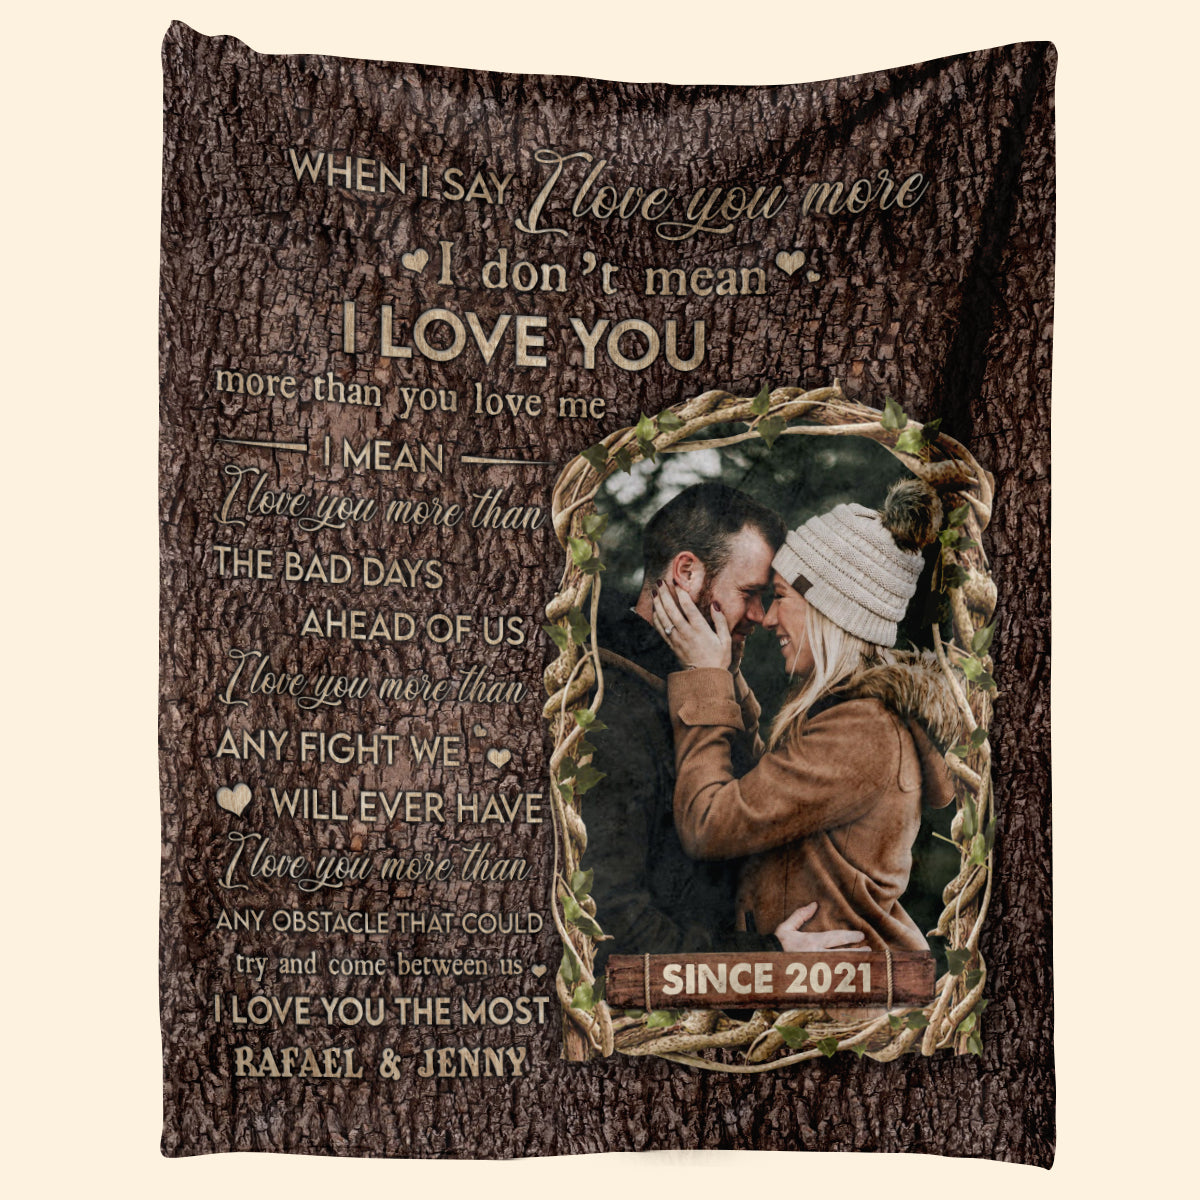 When I Say I Love You More -Personalized Blanket - Anniversary, Lovely Gift For Couple, Spouse Blanket - Gift For Couple 1_2e179de4-3898-4d4c-82ef-edd33b3c010d.jpg?v=1676444351